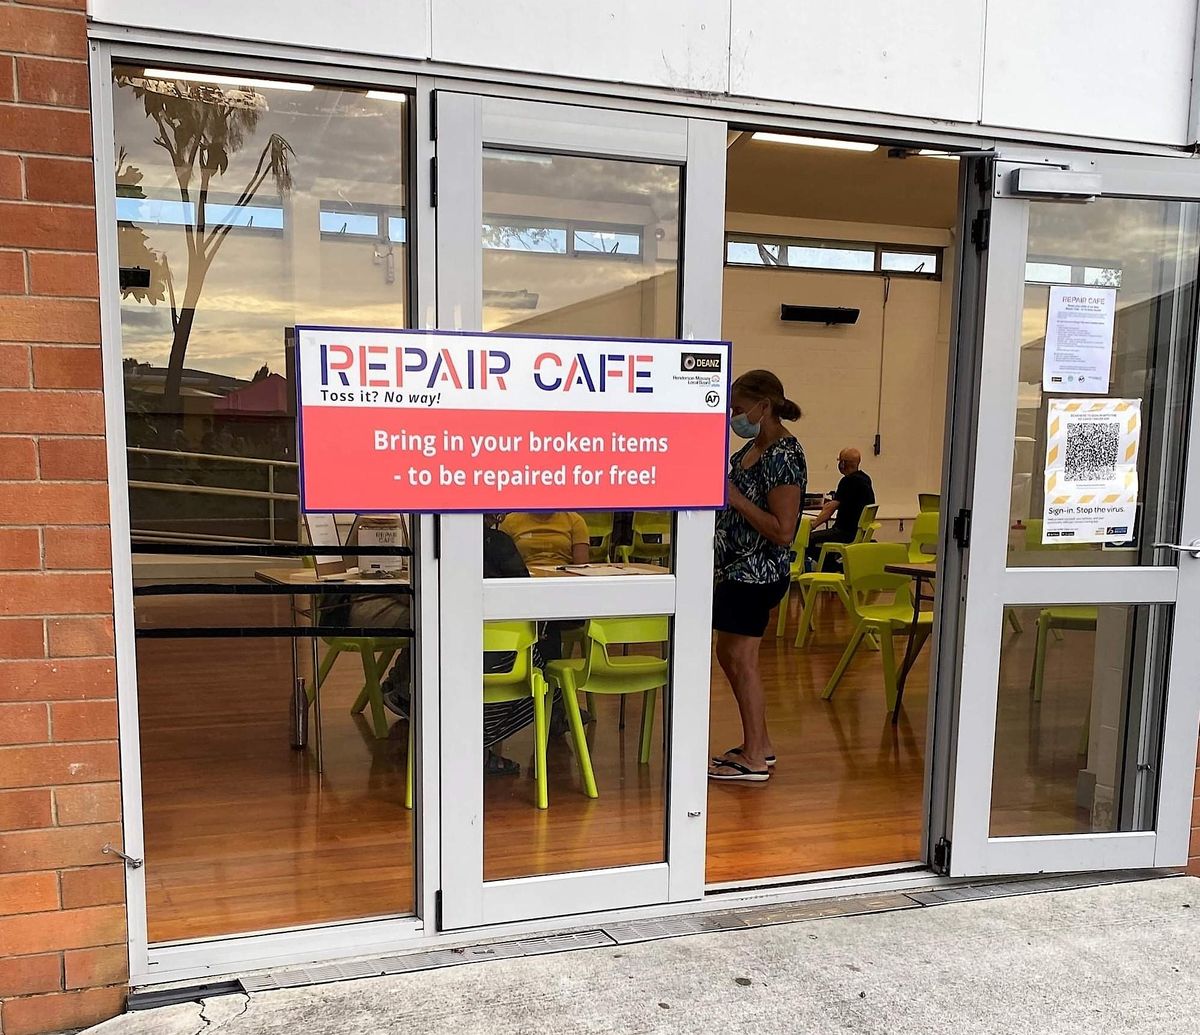 Te Atatu South Repair Cafe